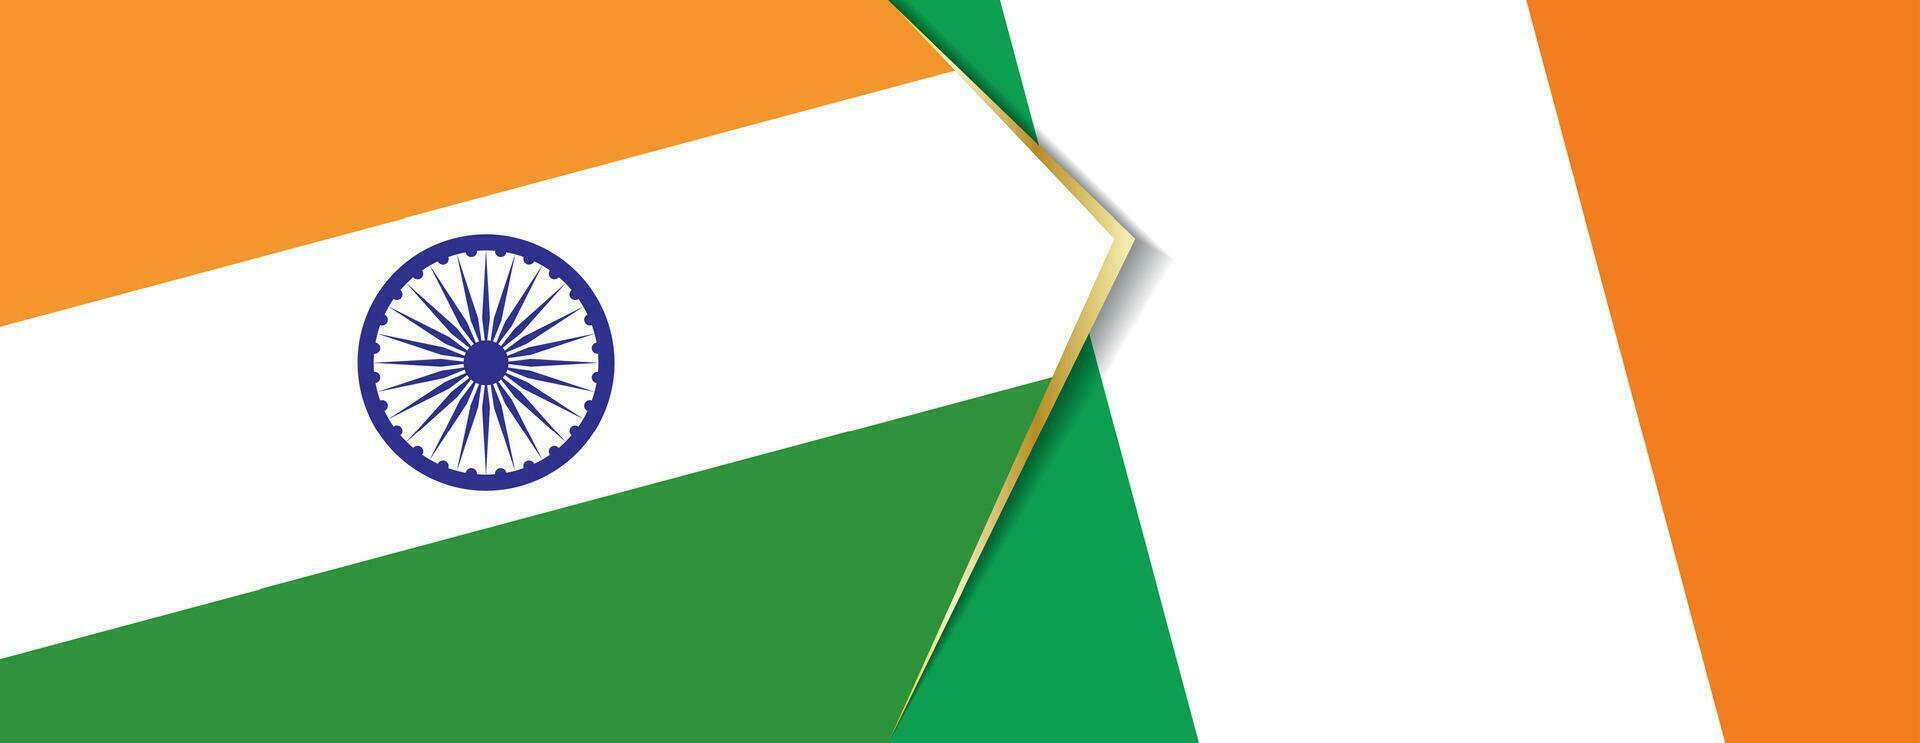 India y Irlanda banderas, dos vector banderas